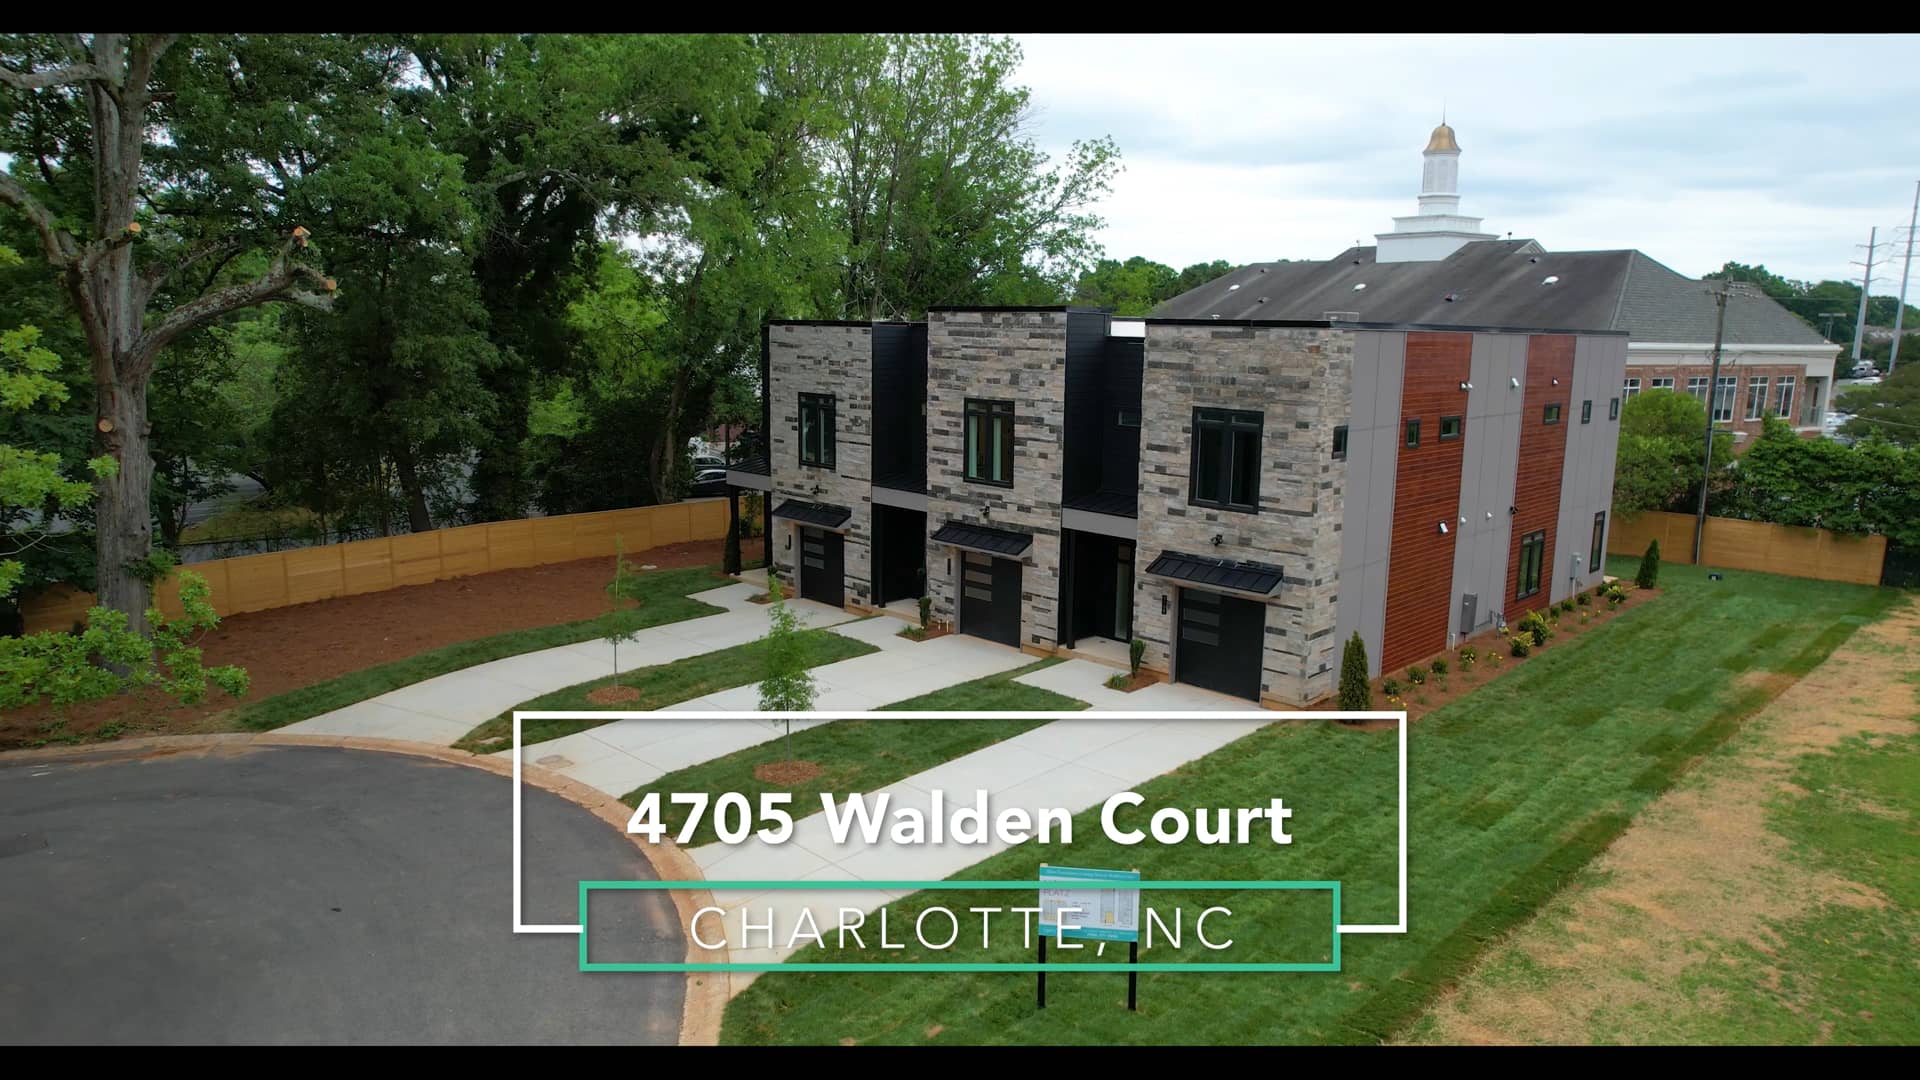 4705 Walden Court mp4 on Vimeo